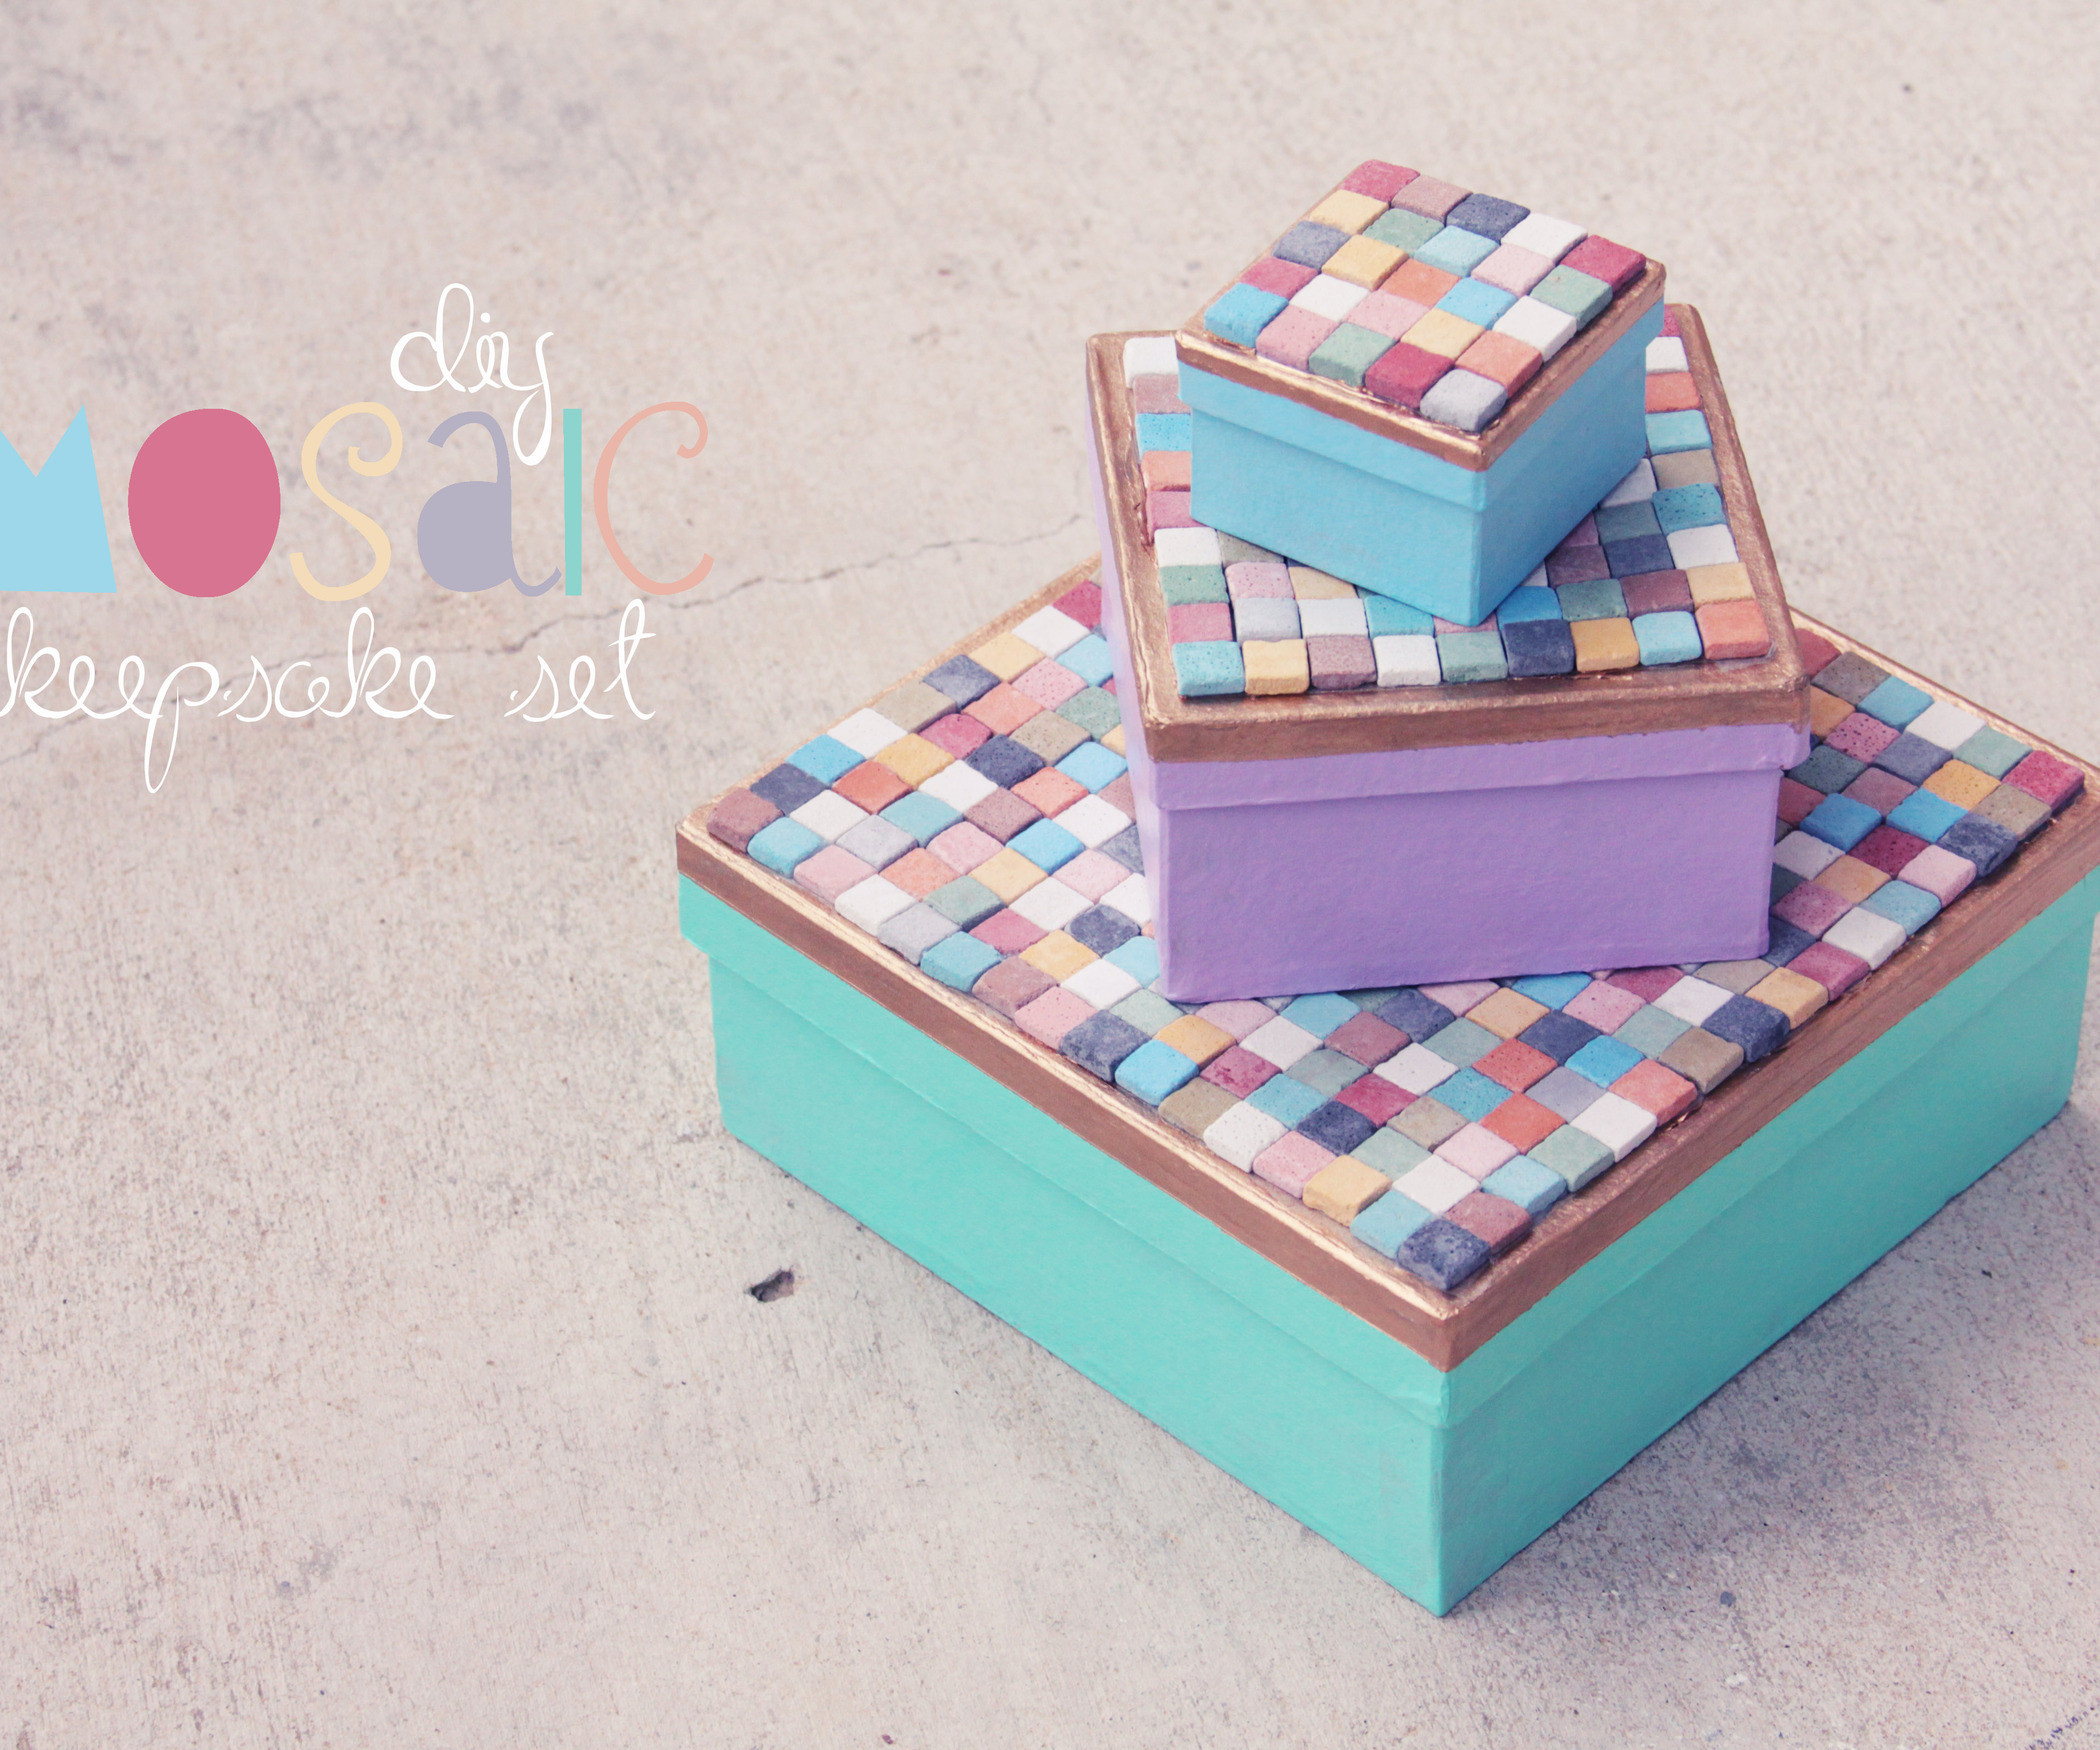 Best ideas about DIY Keepsake Box
. Save or Pin DIY Mosaic Keepsake Boxes Now.